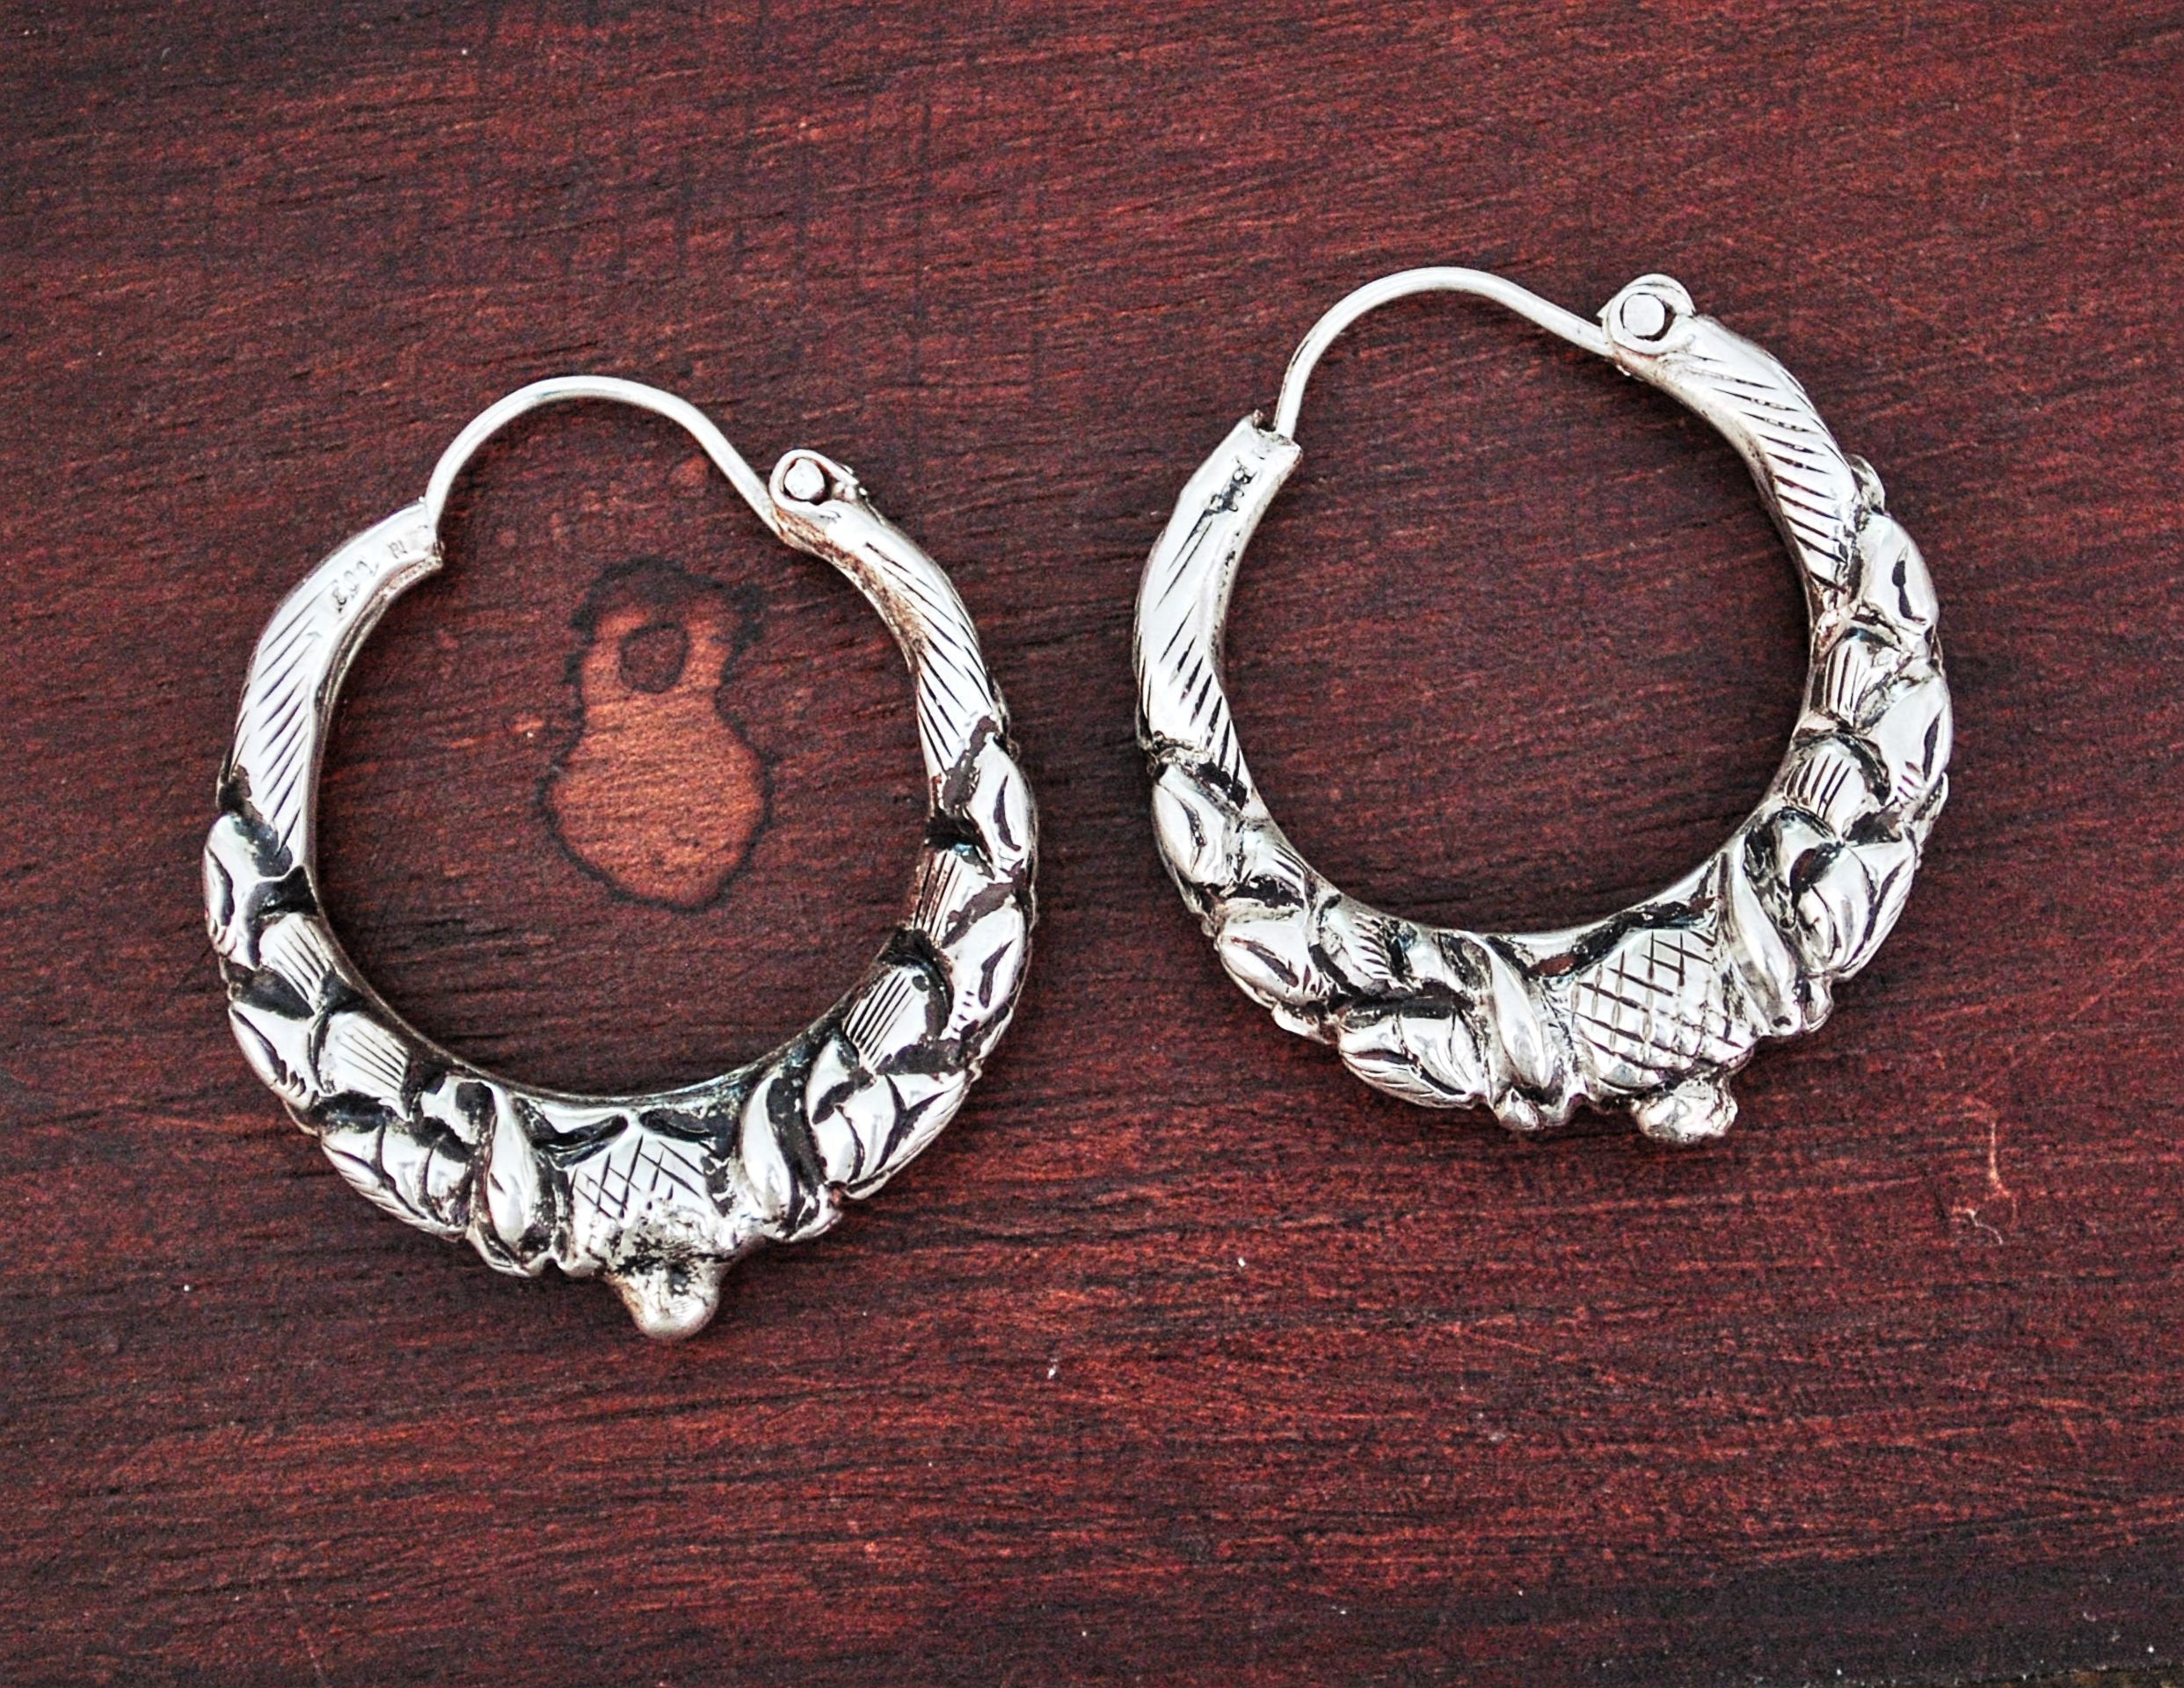 Nepalese Hoop Earrings - MEDIUM - Ethnic Tribal Hoop Earrings - Gypsy Hoop Earrings - Tribal Silver Hoop Earrings - Boho Silver Hoops